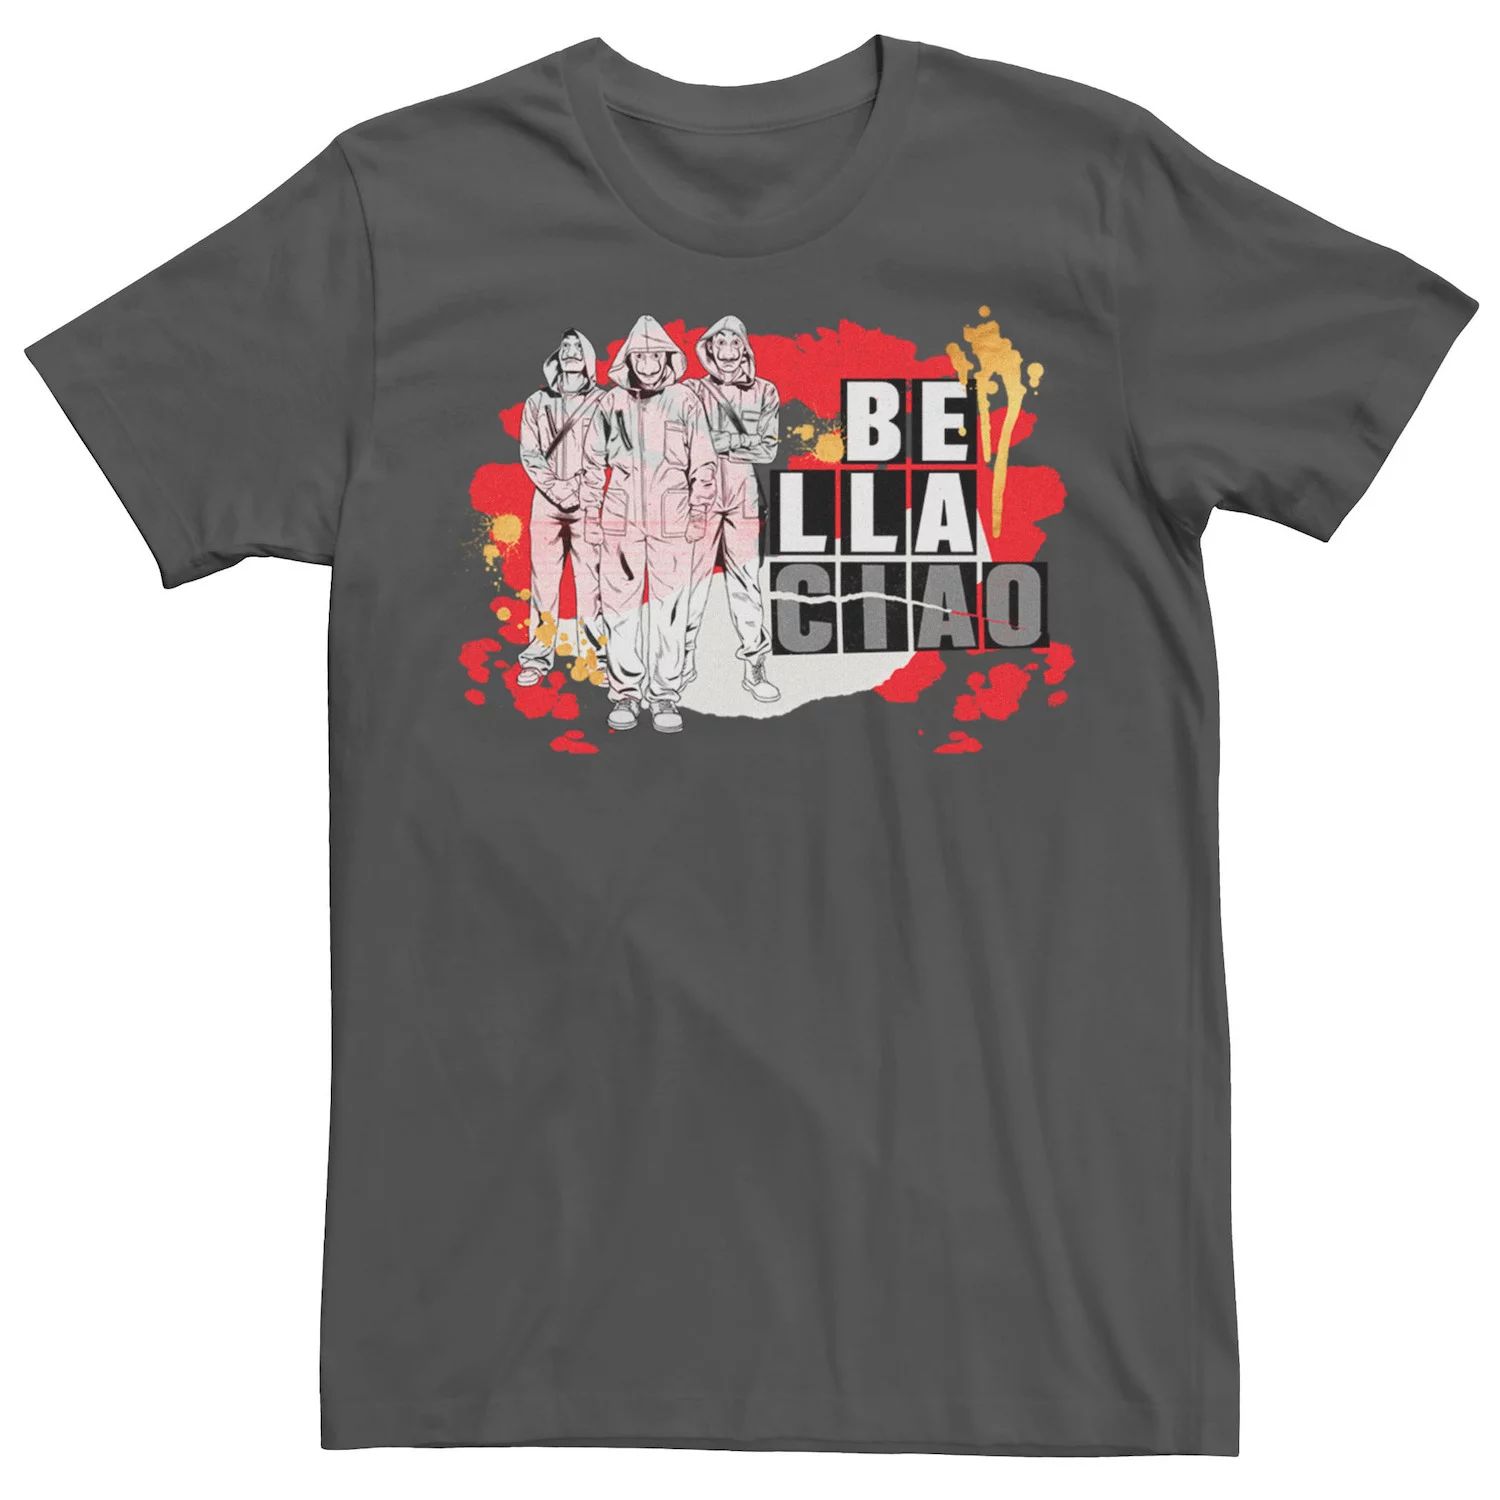 Мужская футболка Netflix La Casa De Papel Bella Ciao с брызгами краски Licensed Character мужская футболка с коротким рукавом la casa de papel bella ciao fifth sun мульти